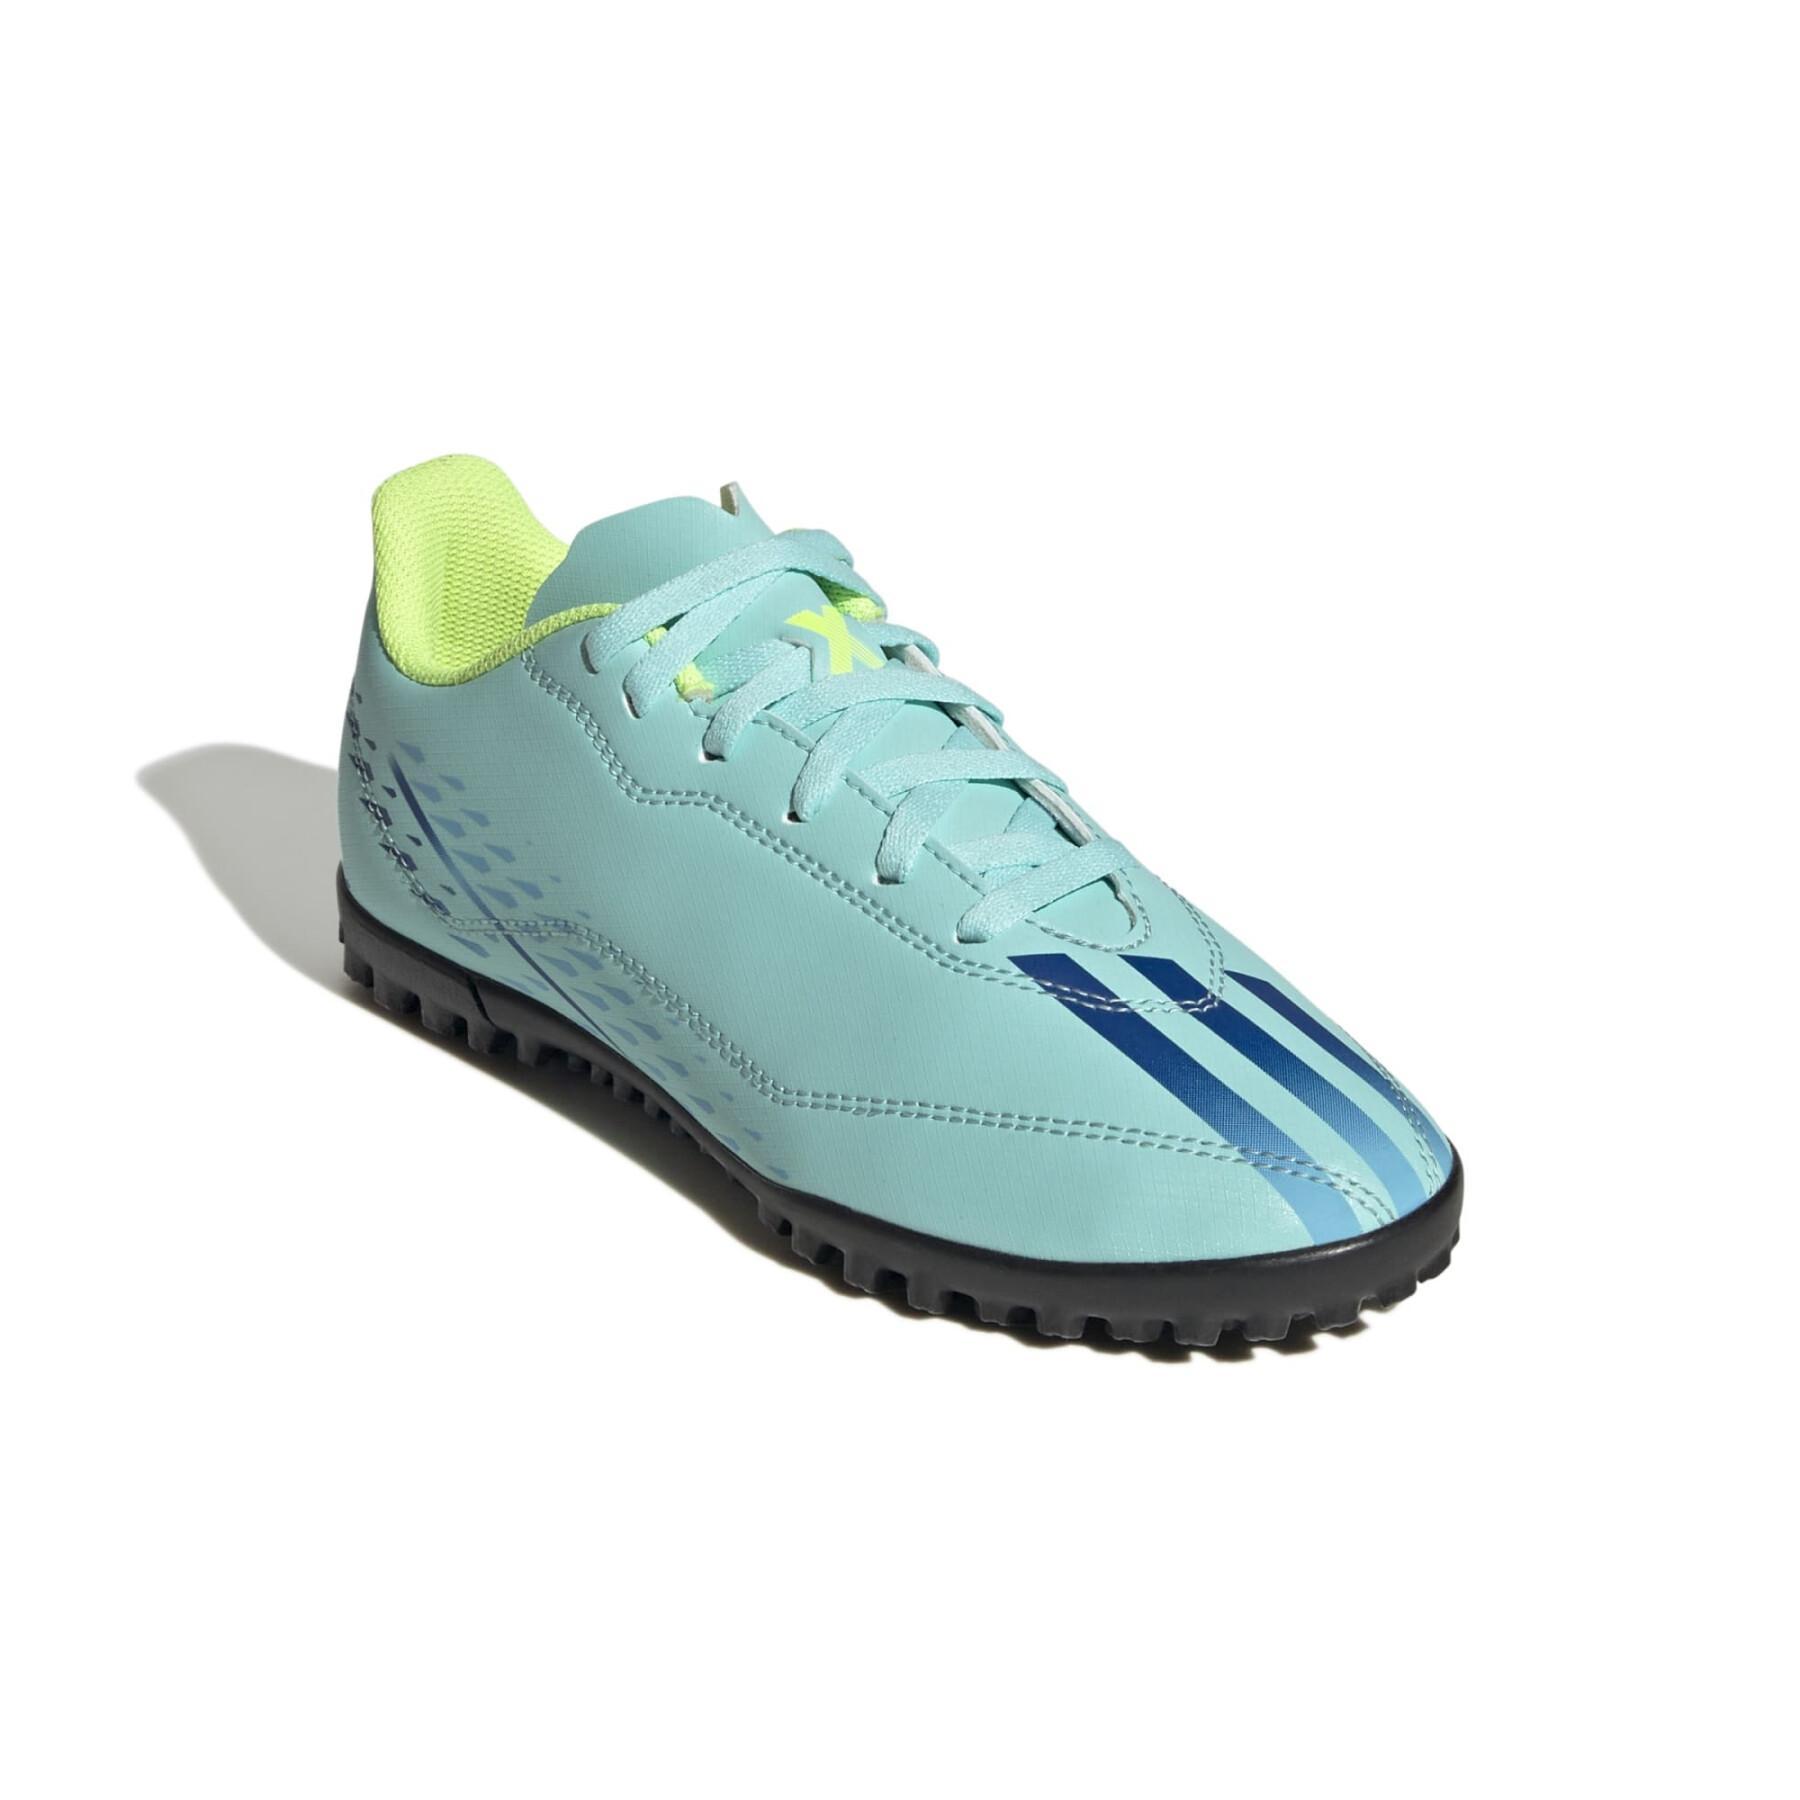 Sapatos de futebol para crianças adidas X Speedportal.4 Turf